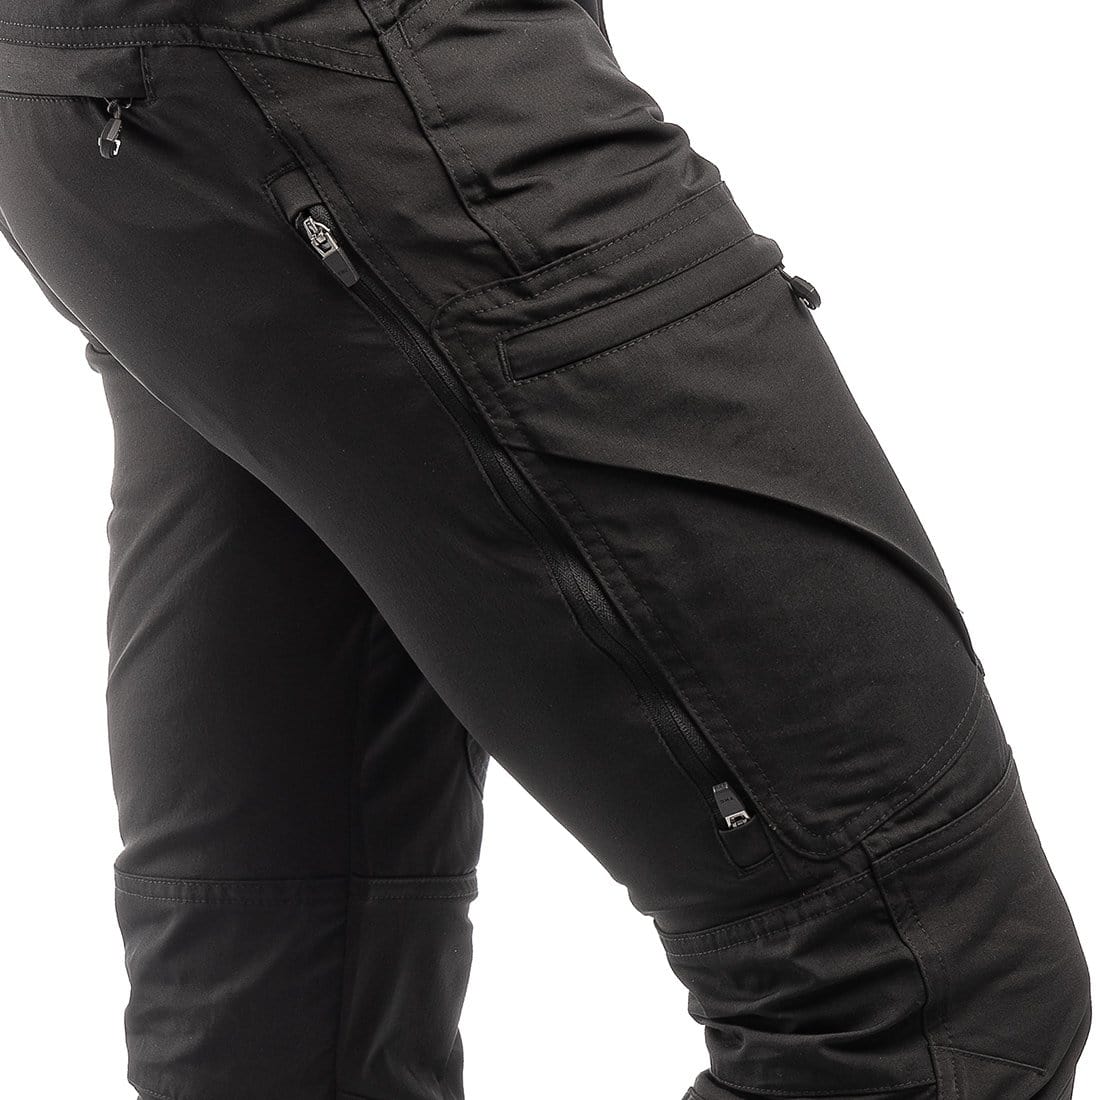 https://arrakusa.com/cdn/shop/files/arrak-outdoor-pants-active-stretch-pants-men-s-black-long-28845189267514_1800x1800.jpg?v=1701888370